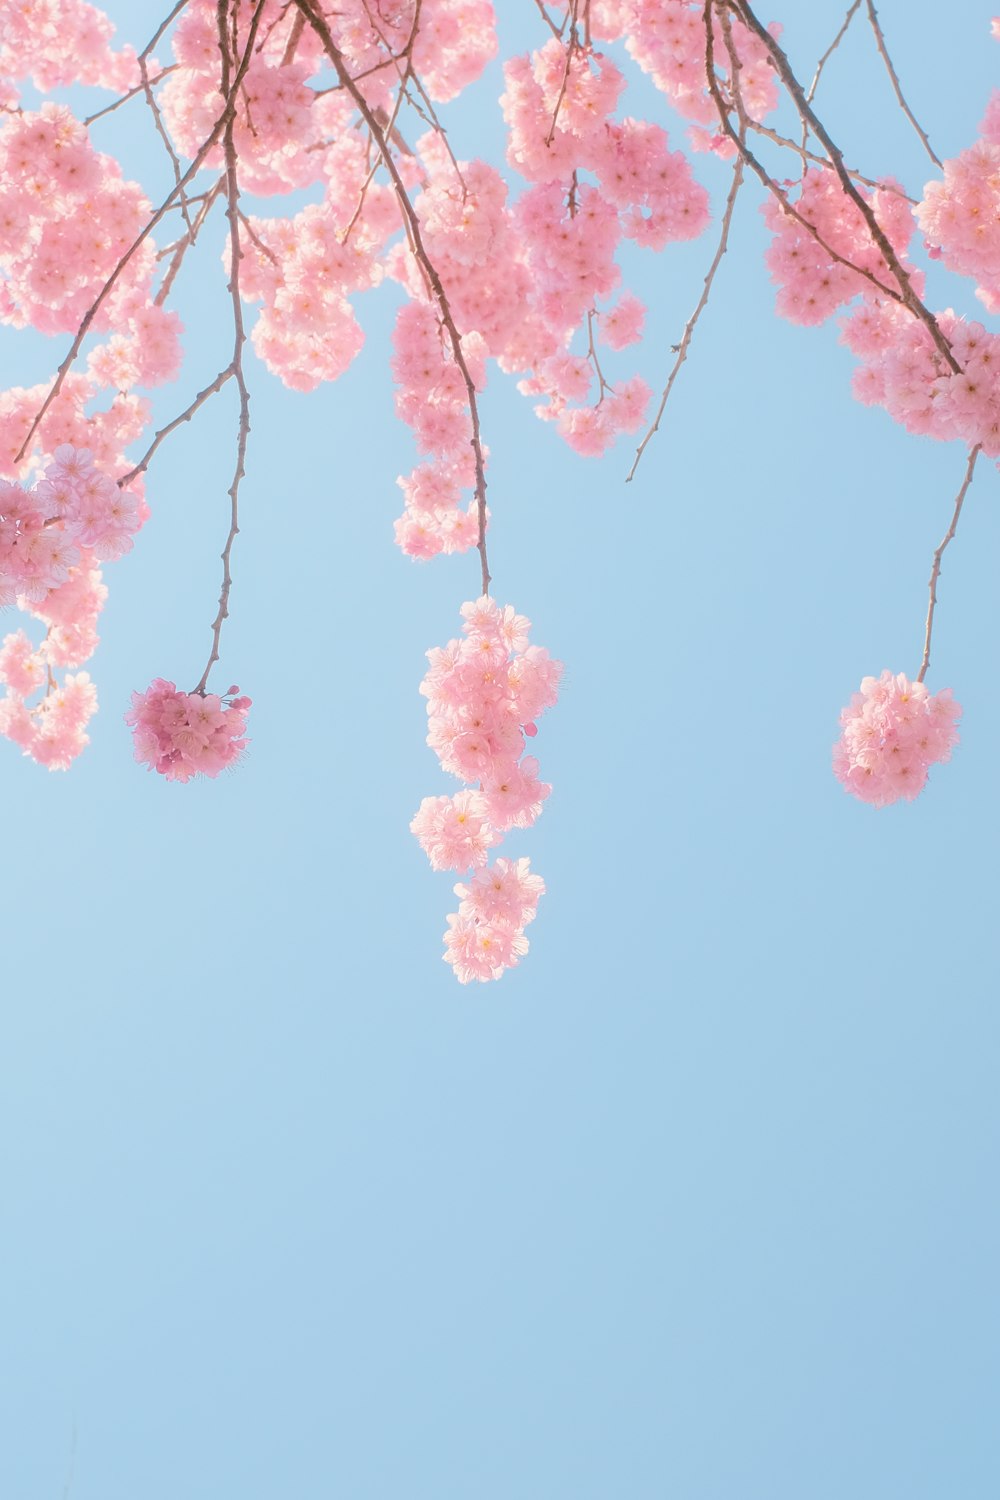 albero di ciliegio rosa in fiore sotto il cielo blu